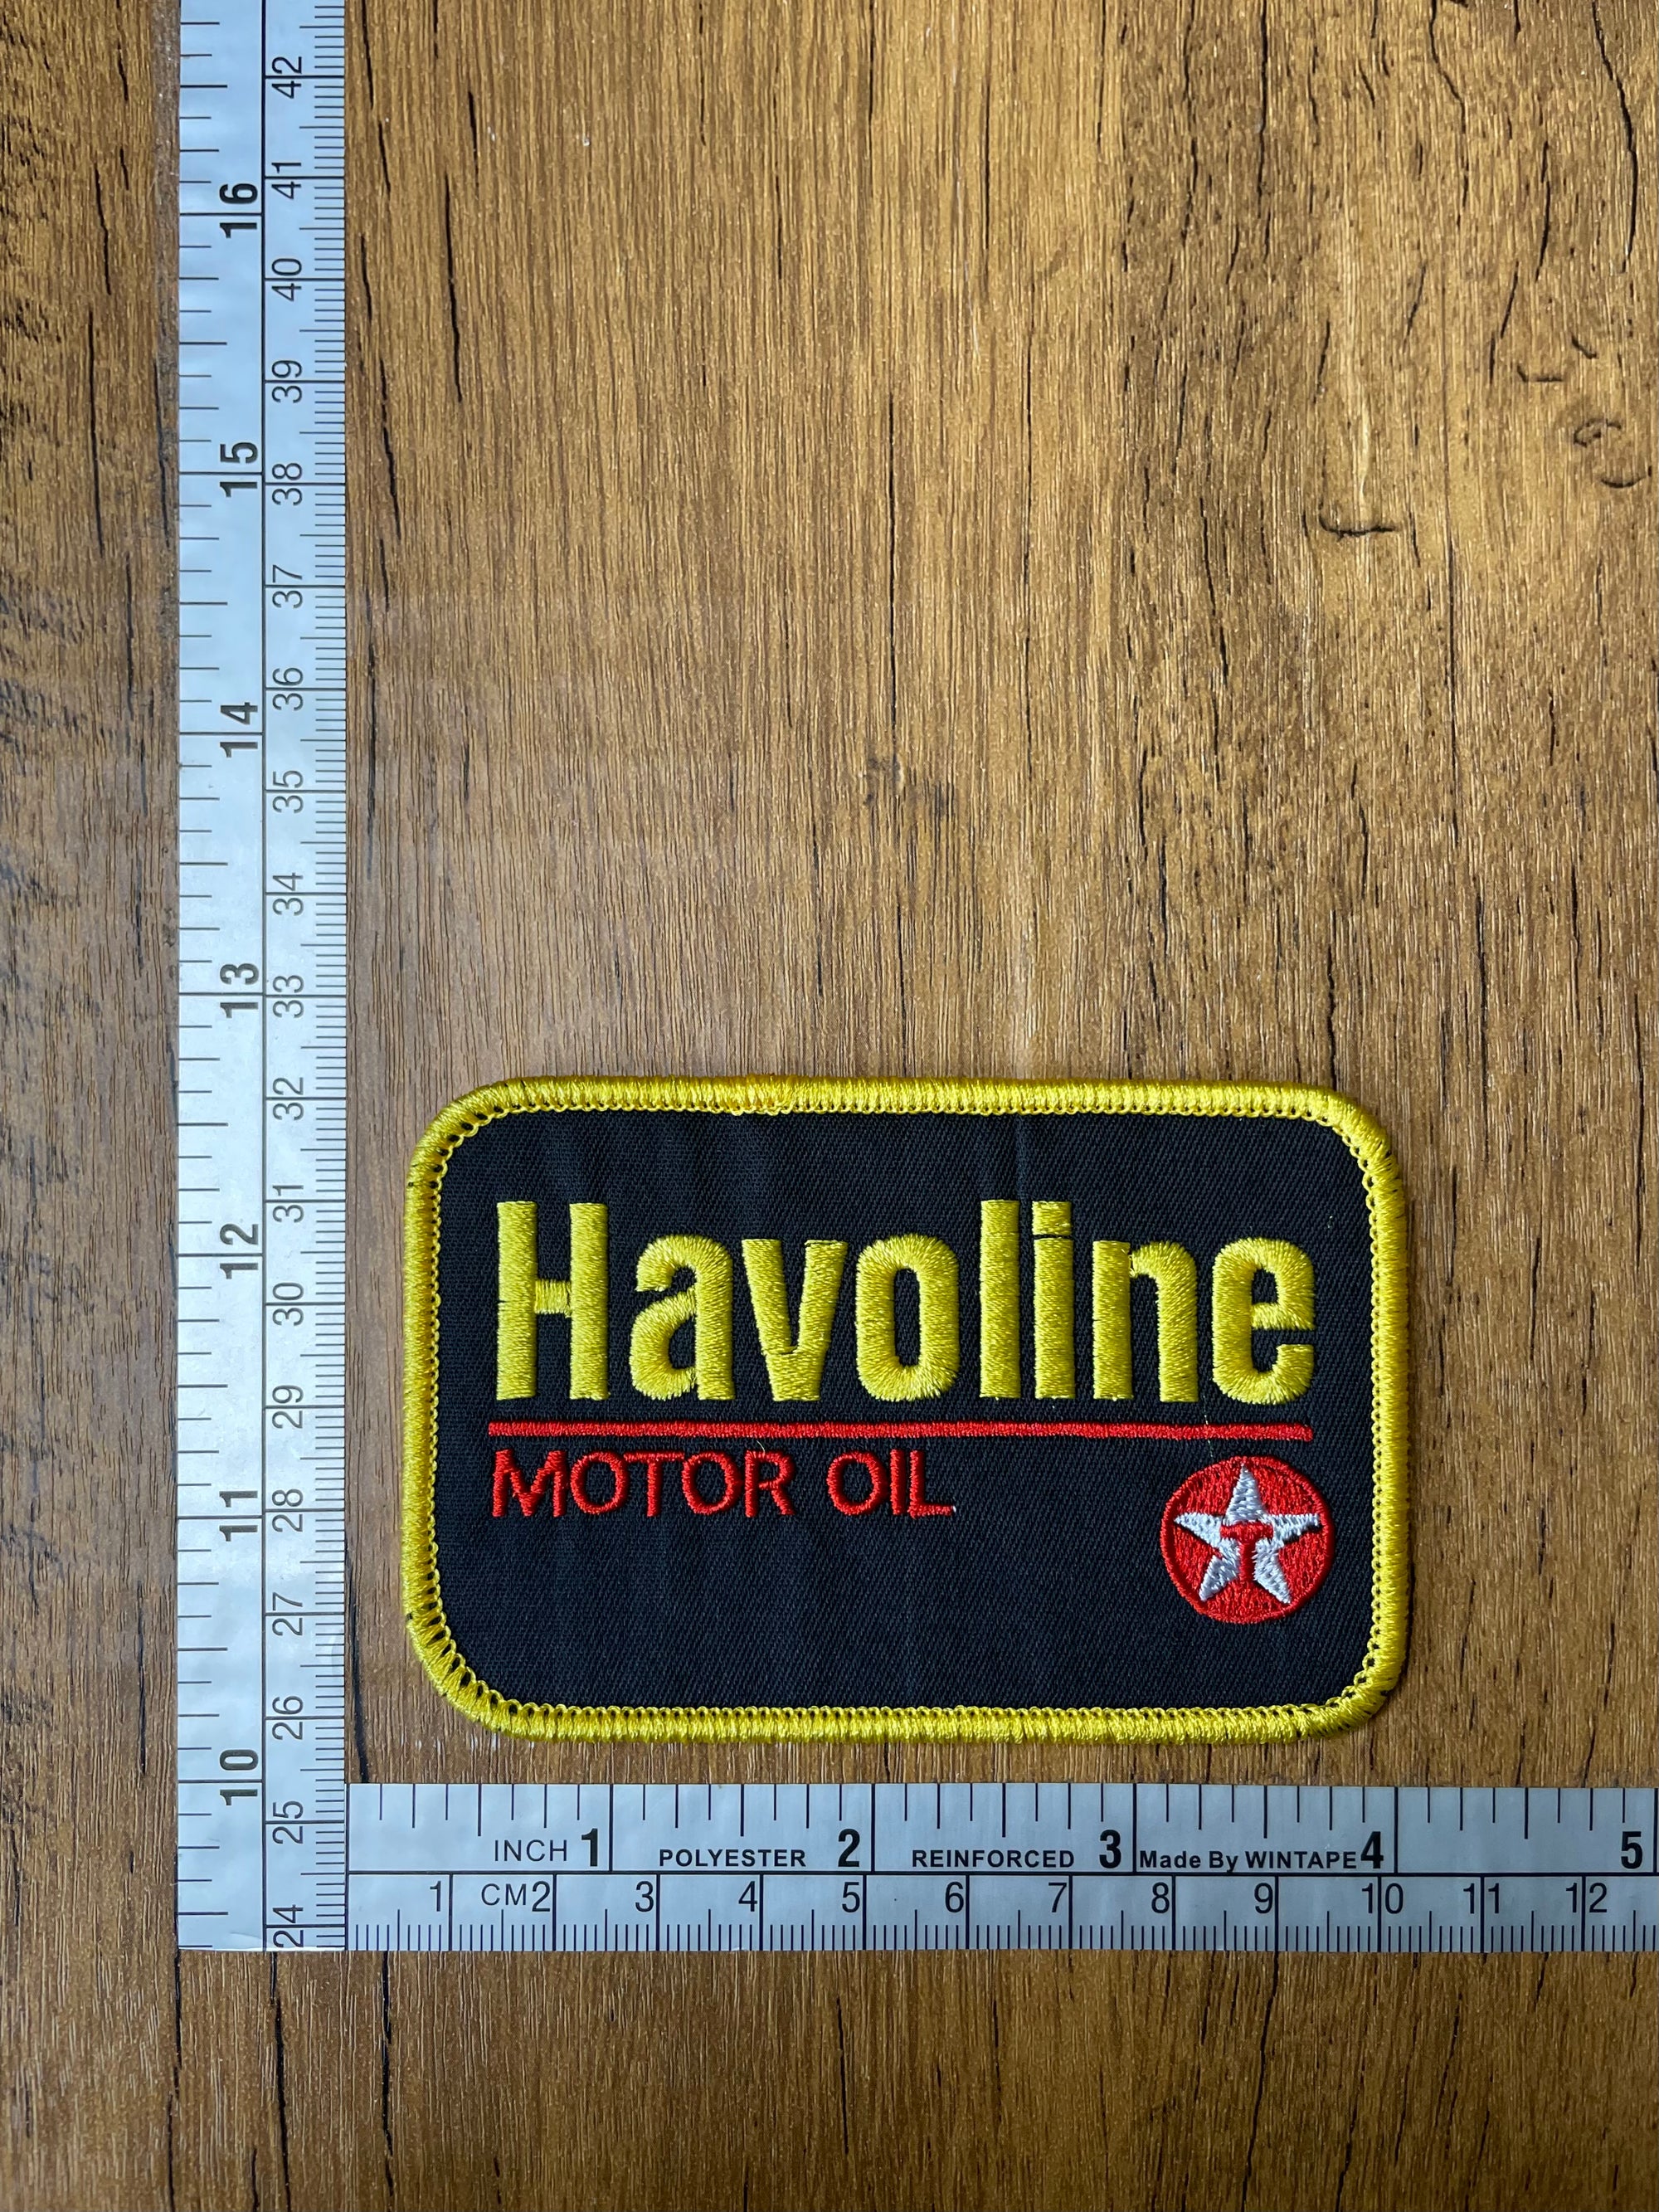 Havoline Motor Oil